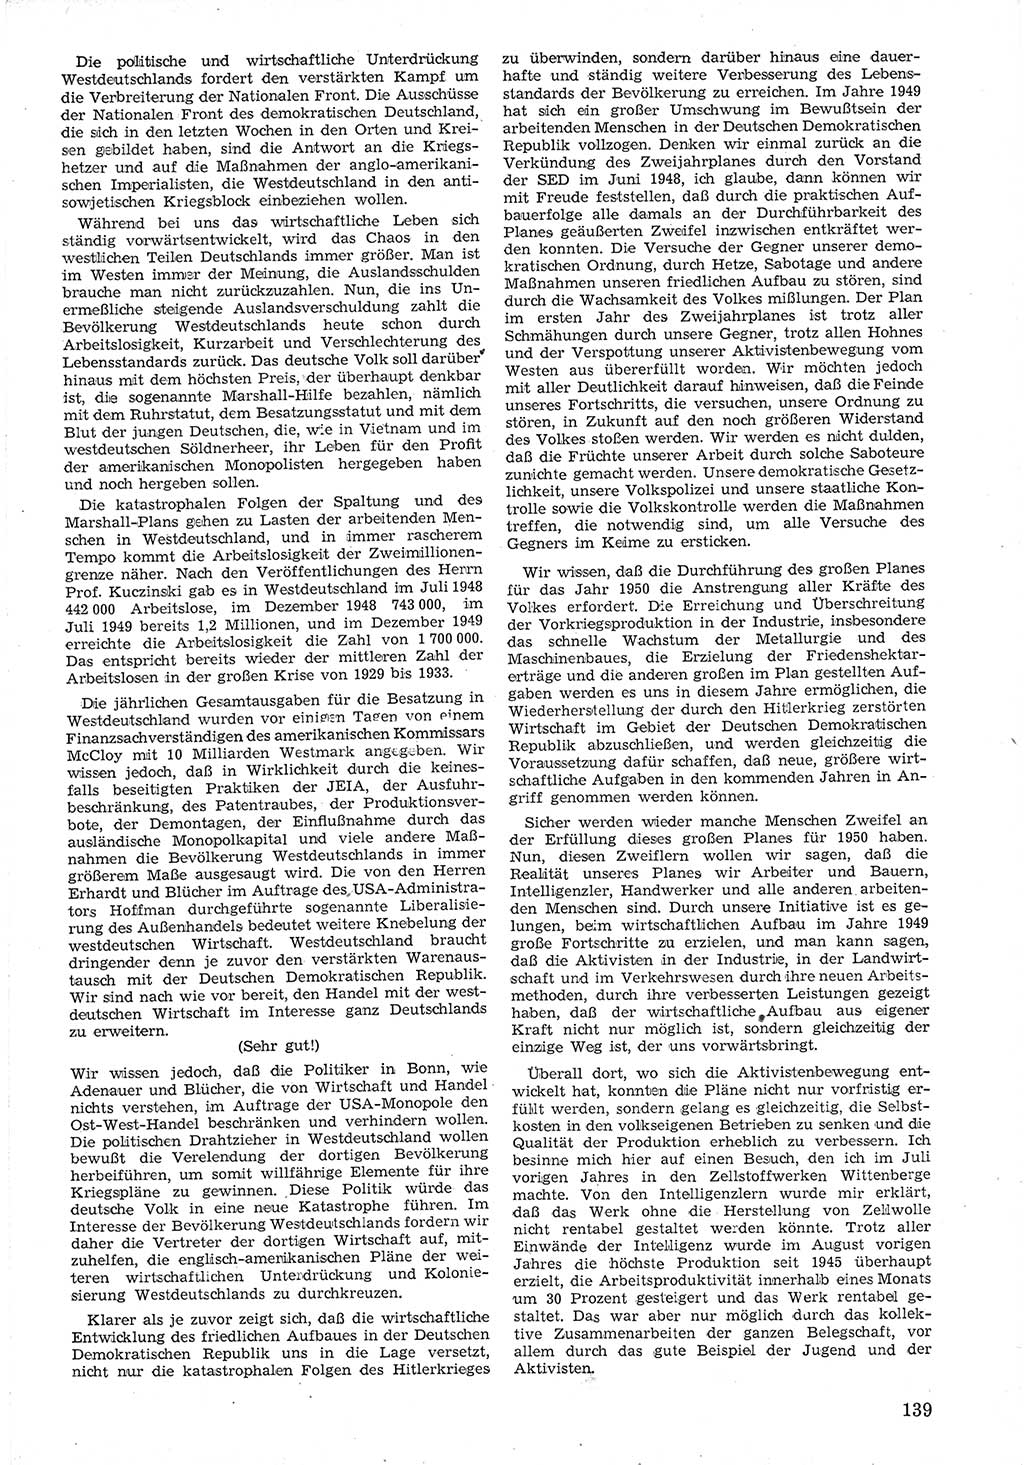 Provisorische Volkskammer (VK) der Deutschen Demokratischen Republik (DDR) 1949-1950, Dokument 151 (Prov. VK DDR 1949-1950, Dok. 151)